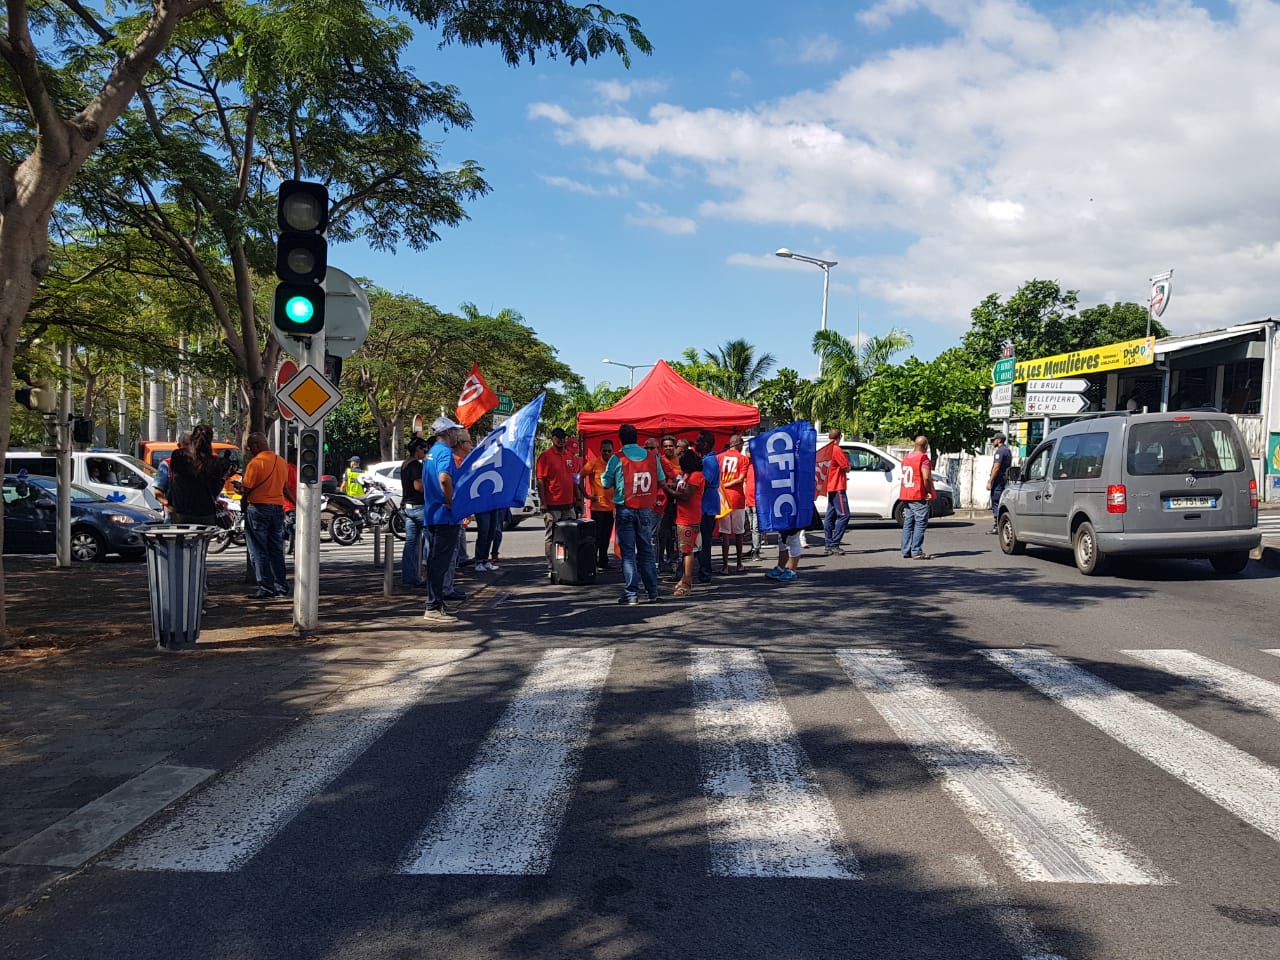 Les grévistes du CHU installent une tente sur les voies du boulevard sud